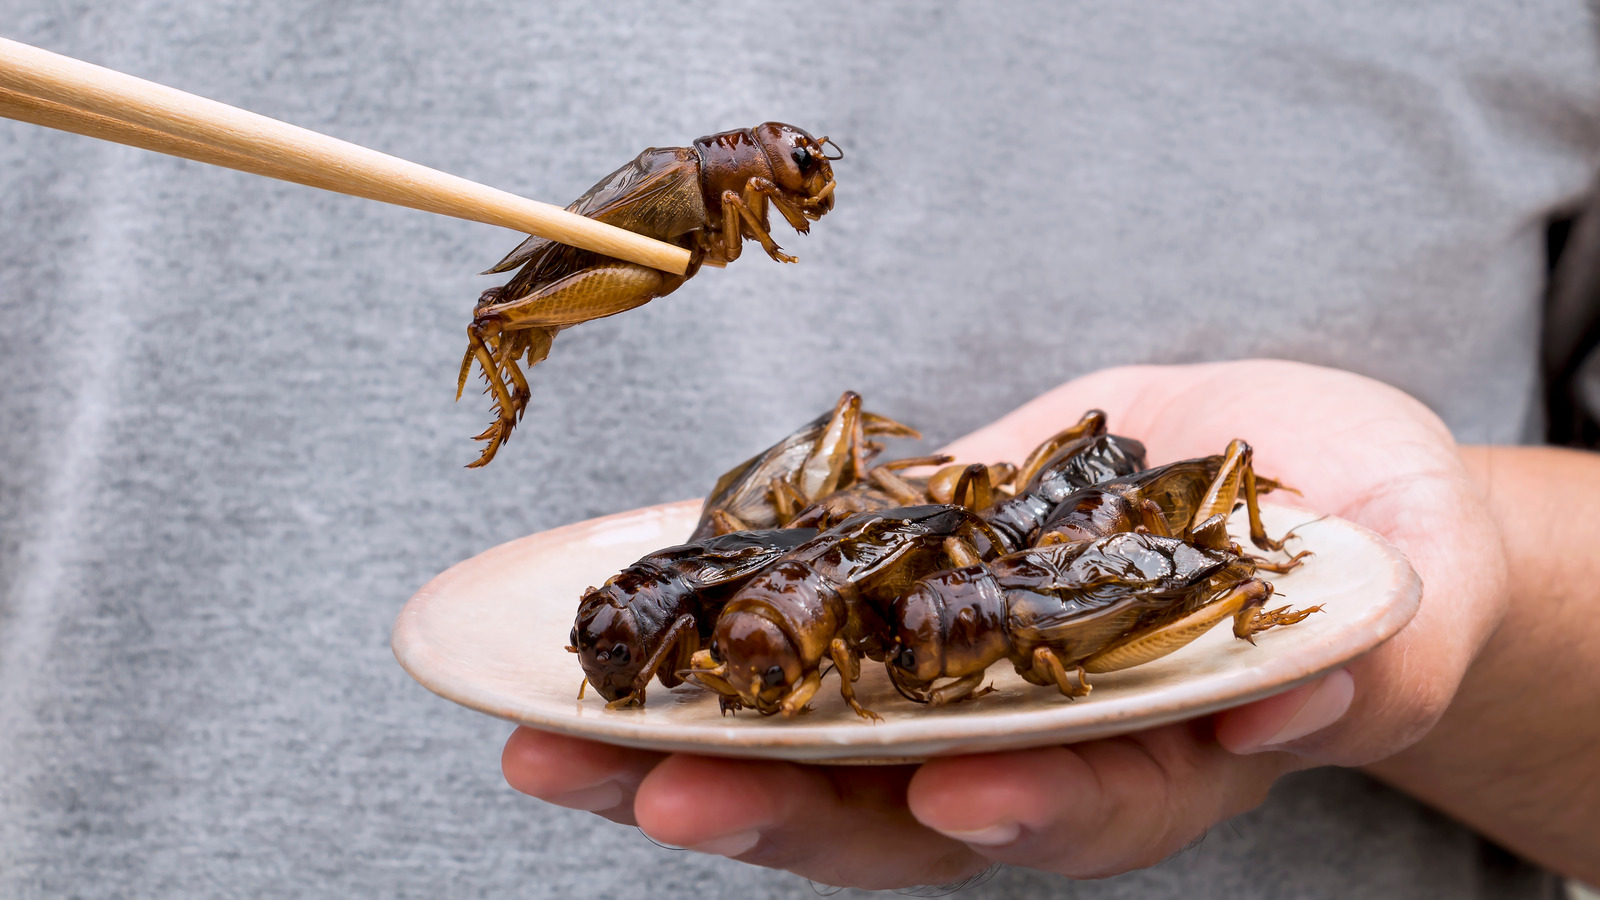 [Game] Mời bạn chia sẻ: Tại sao việc ăn côn trùng chưa phổ biến?